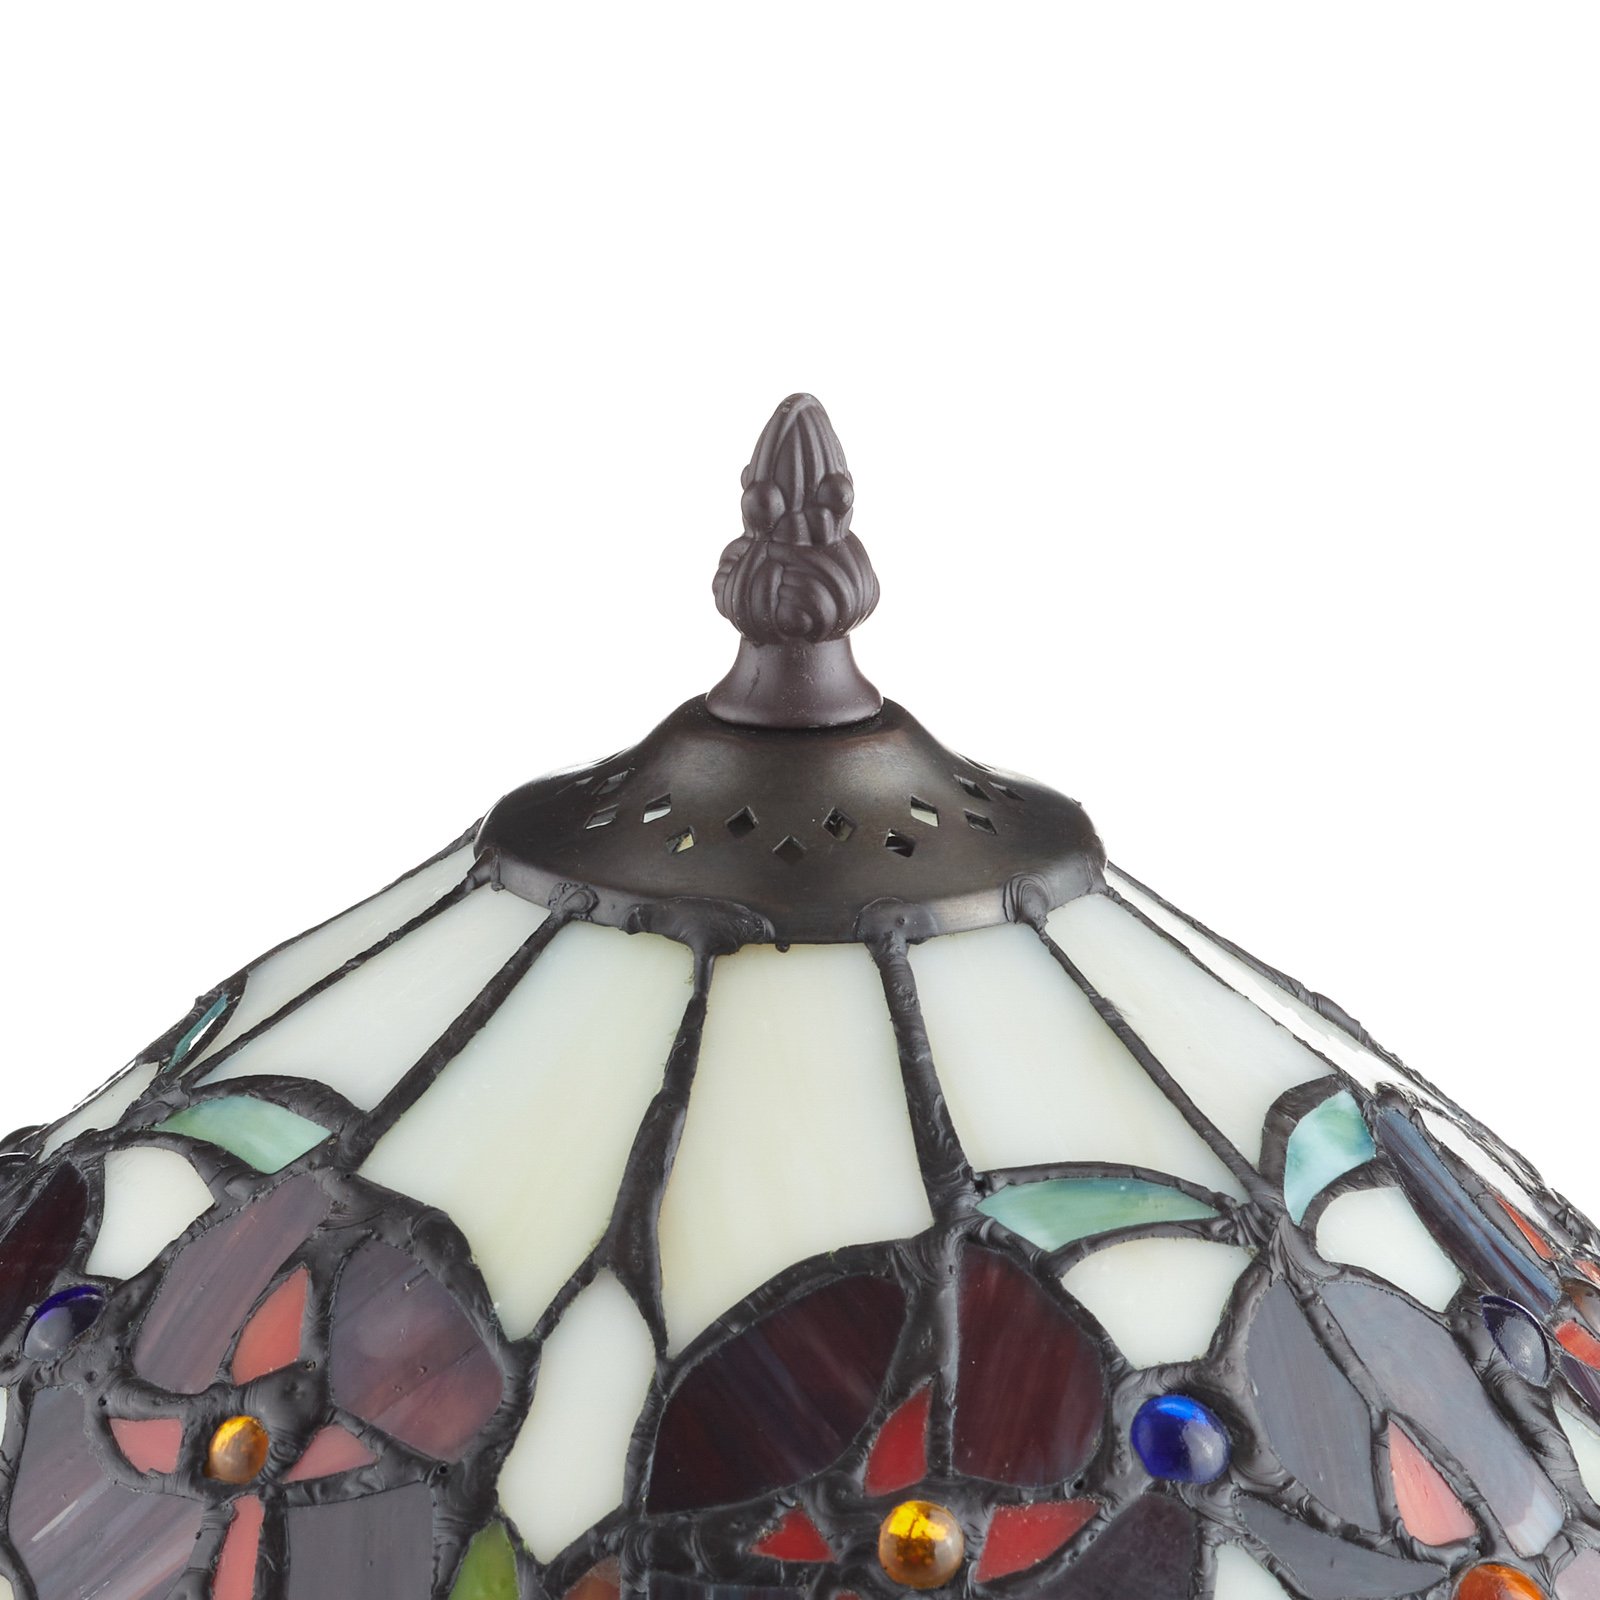 ELINE klasszikus Tiffany stílusú lámpa 40 cm